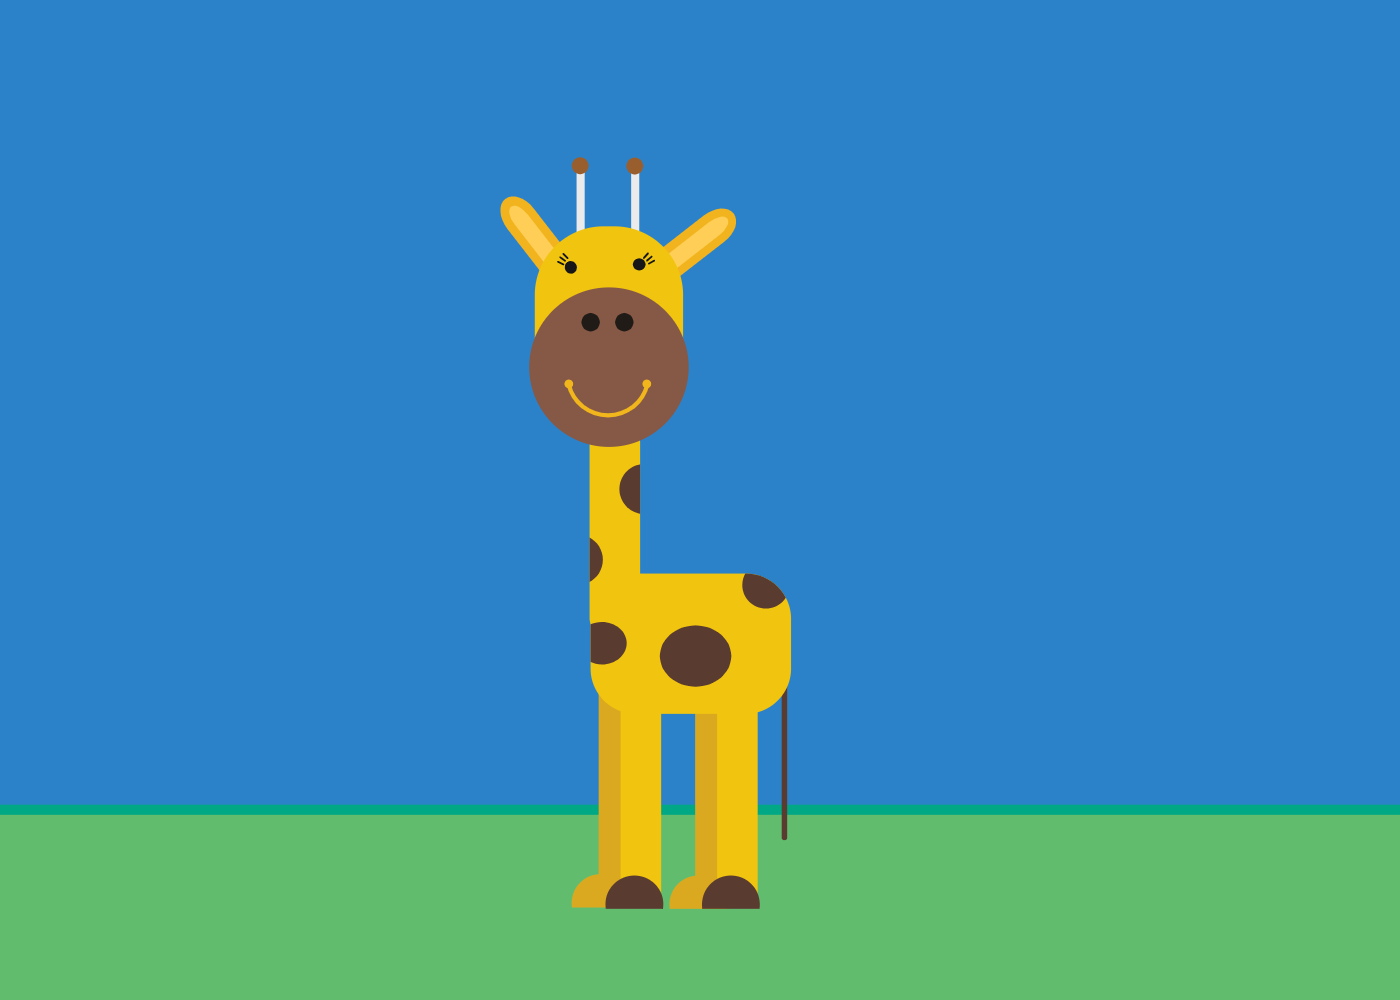 How To Create A Cartoon Giraffe In Gravit Designer By Ellie Erfolg Gravit Designer Medium